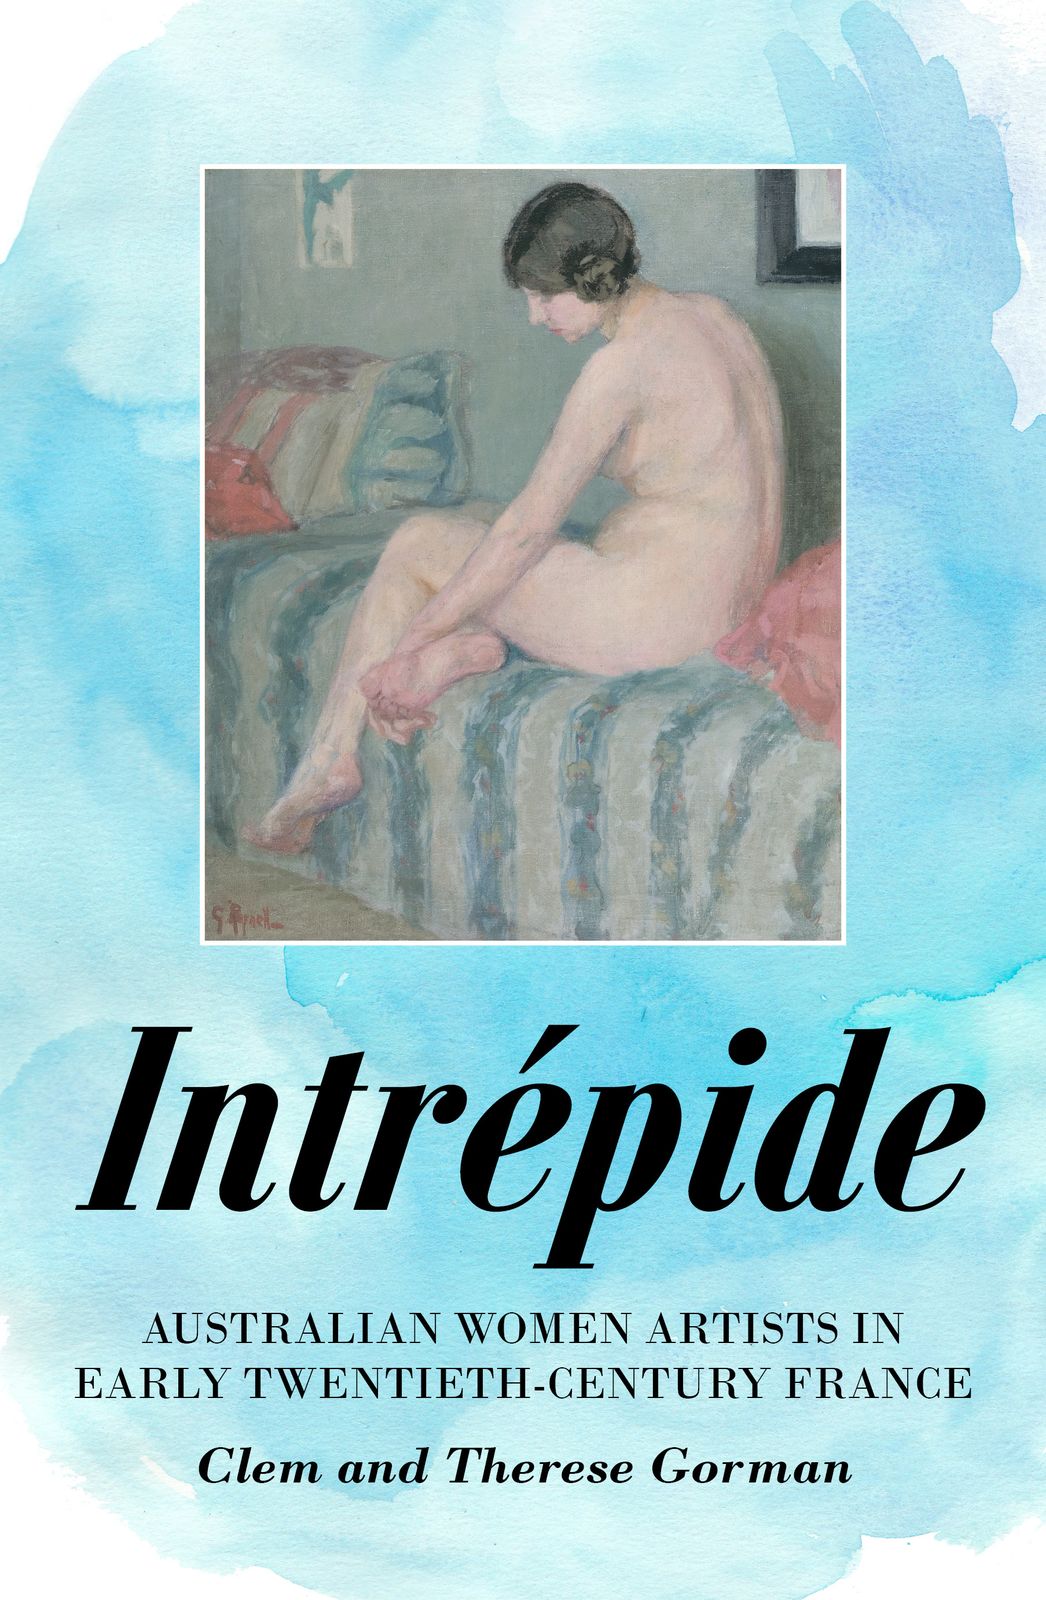 Intrepide: Australian Women Artists in Early Twentieth-century France